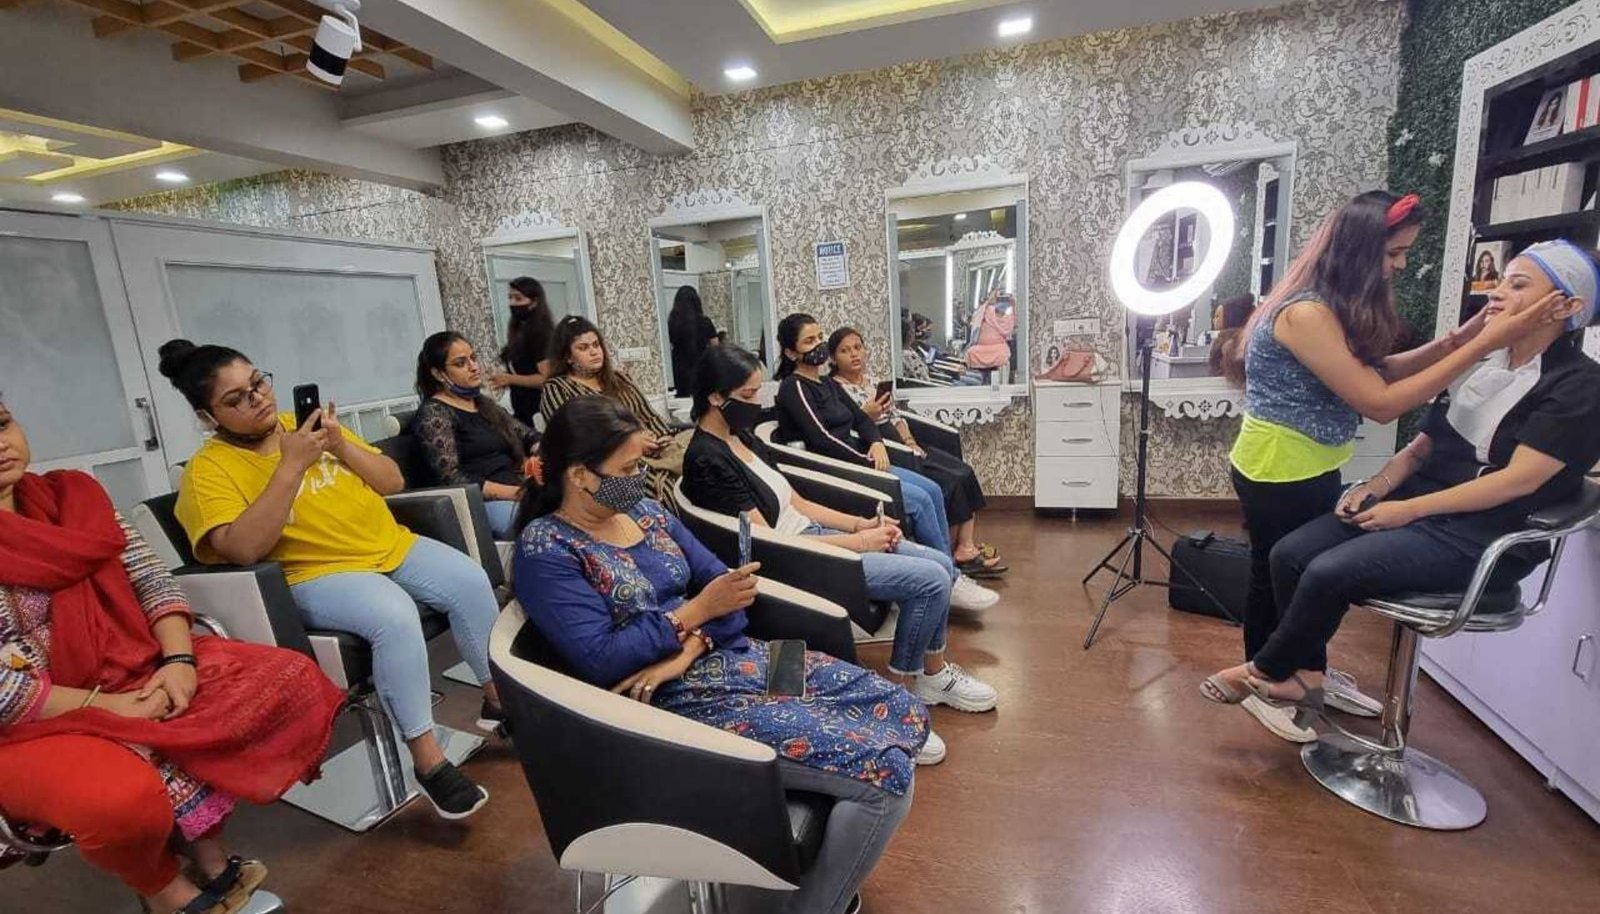 makeup academy in delhi